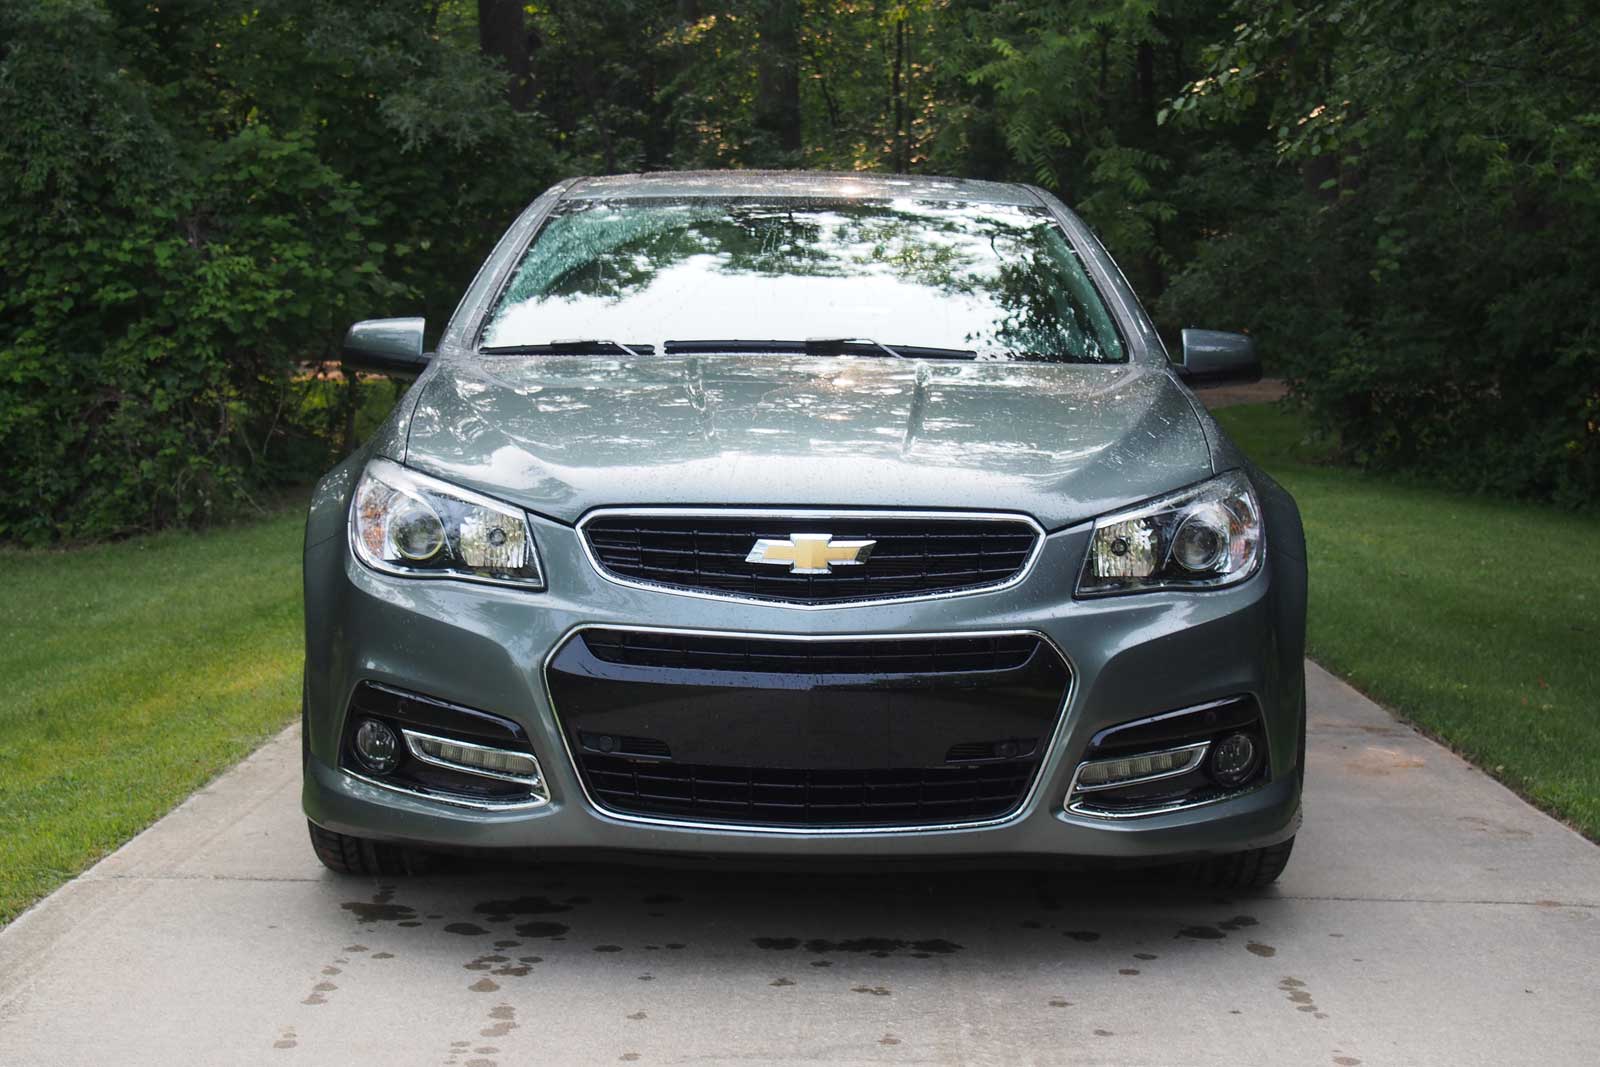 2015 Chevrolet SS Review - AutoGuide.com